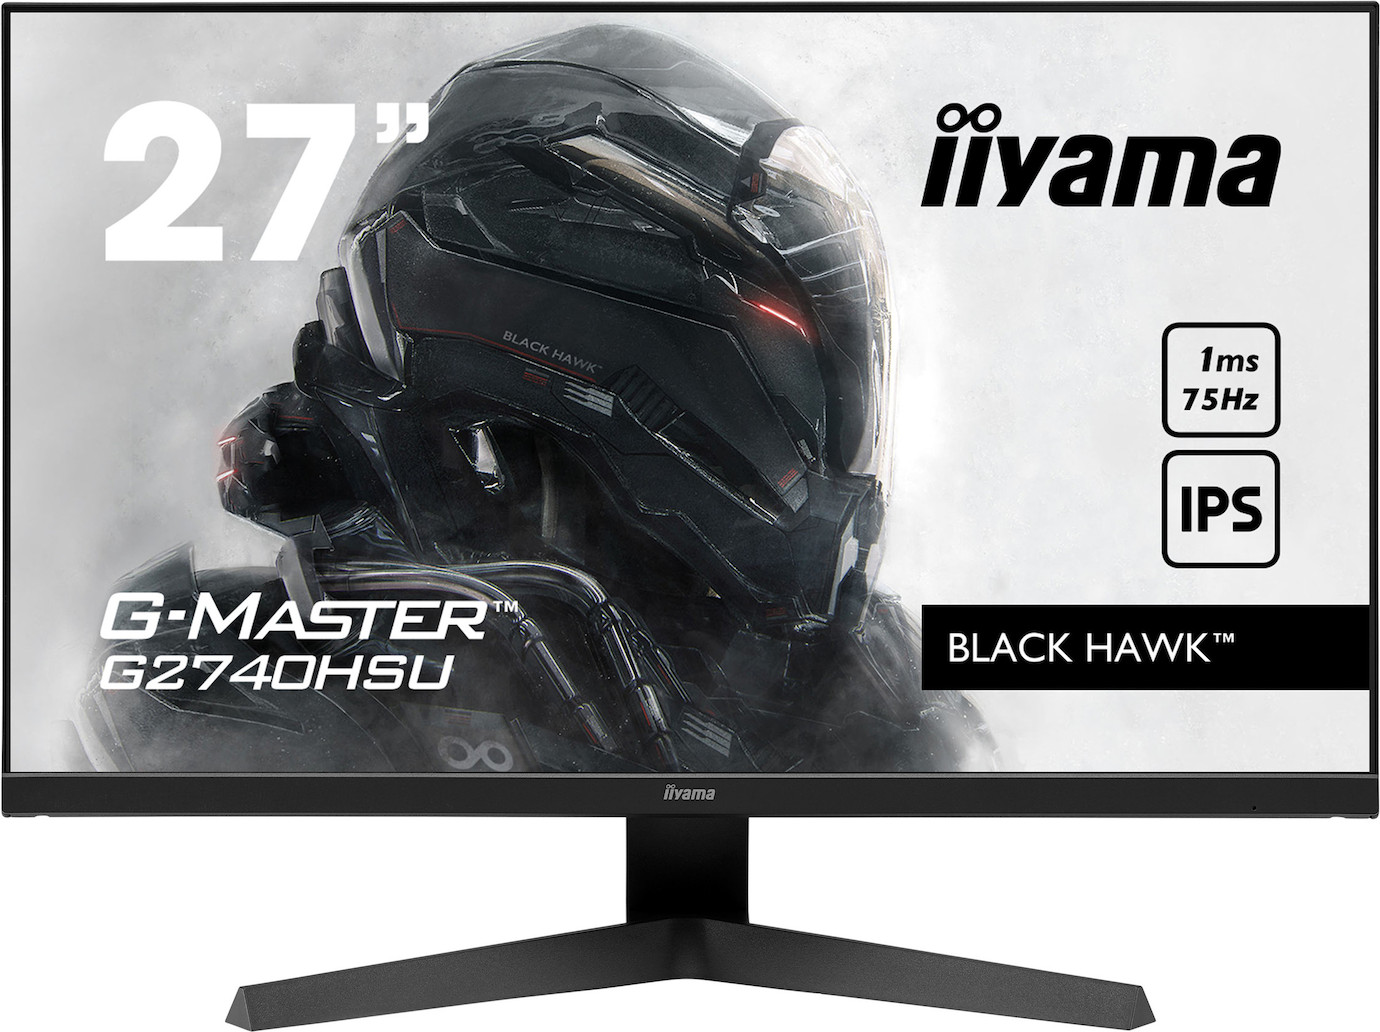 iiyama G-MASTER G2740HSU-B1 27'' Gamingmonitor mit 1ms und Full HD